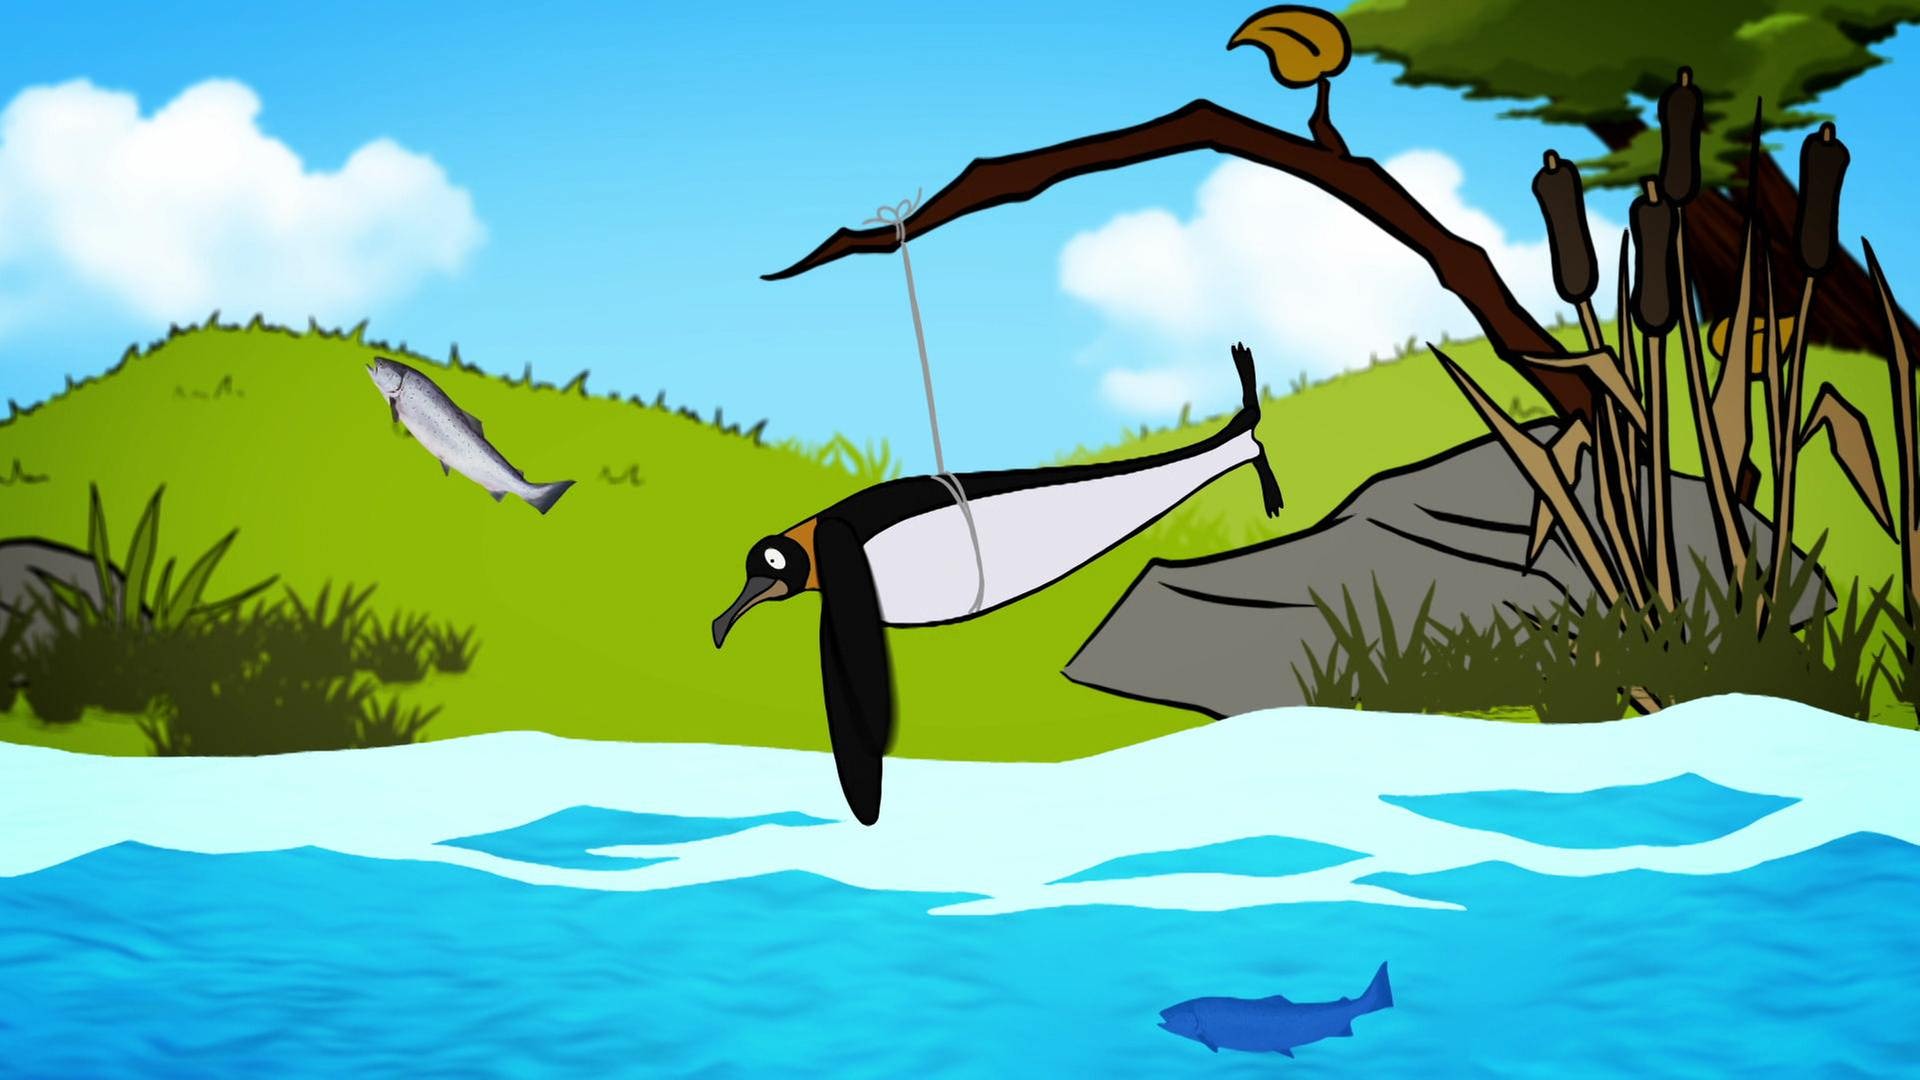 Zeichnung eines Pinguins, der an einem Ast festgebunden ist und so fliegen kann.